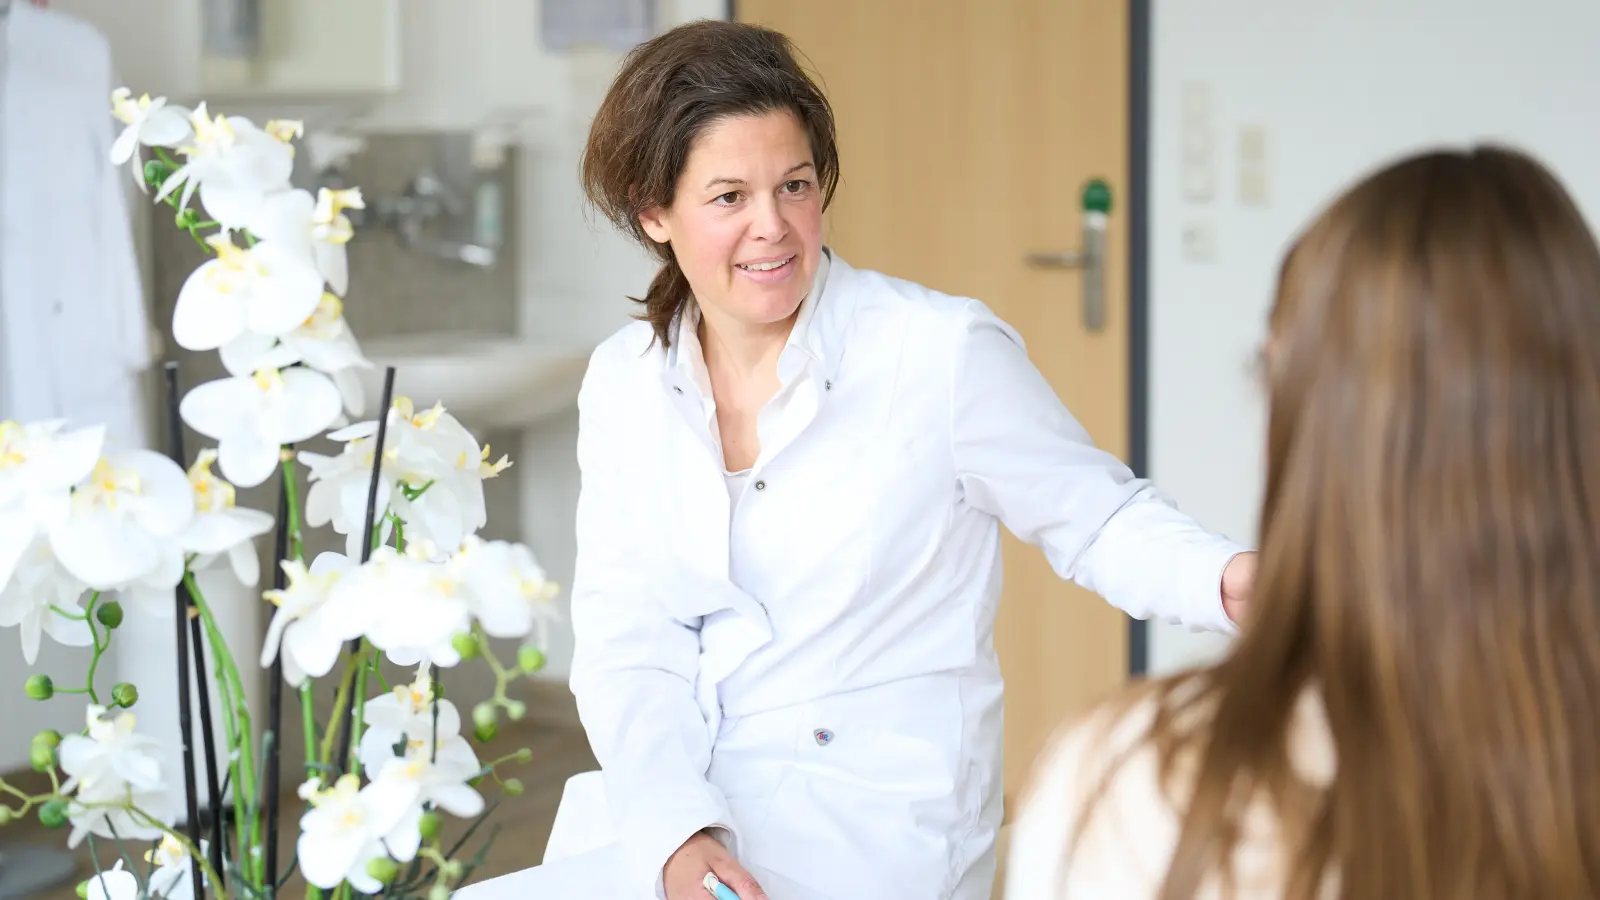 Chefärztin Dr. Sabine Keim im Gespräch mit einer Patientin. (Foto: Helios)